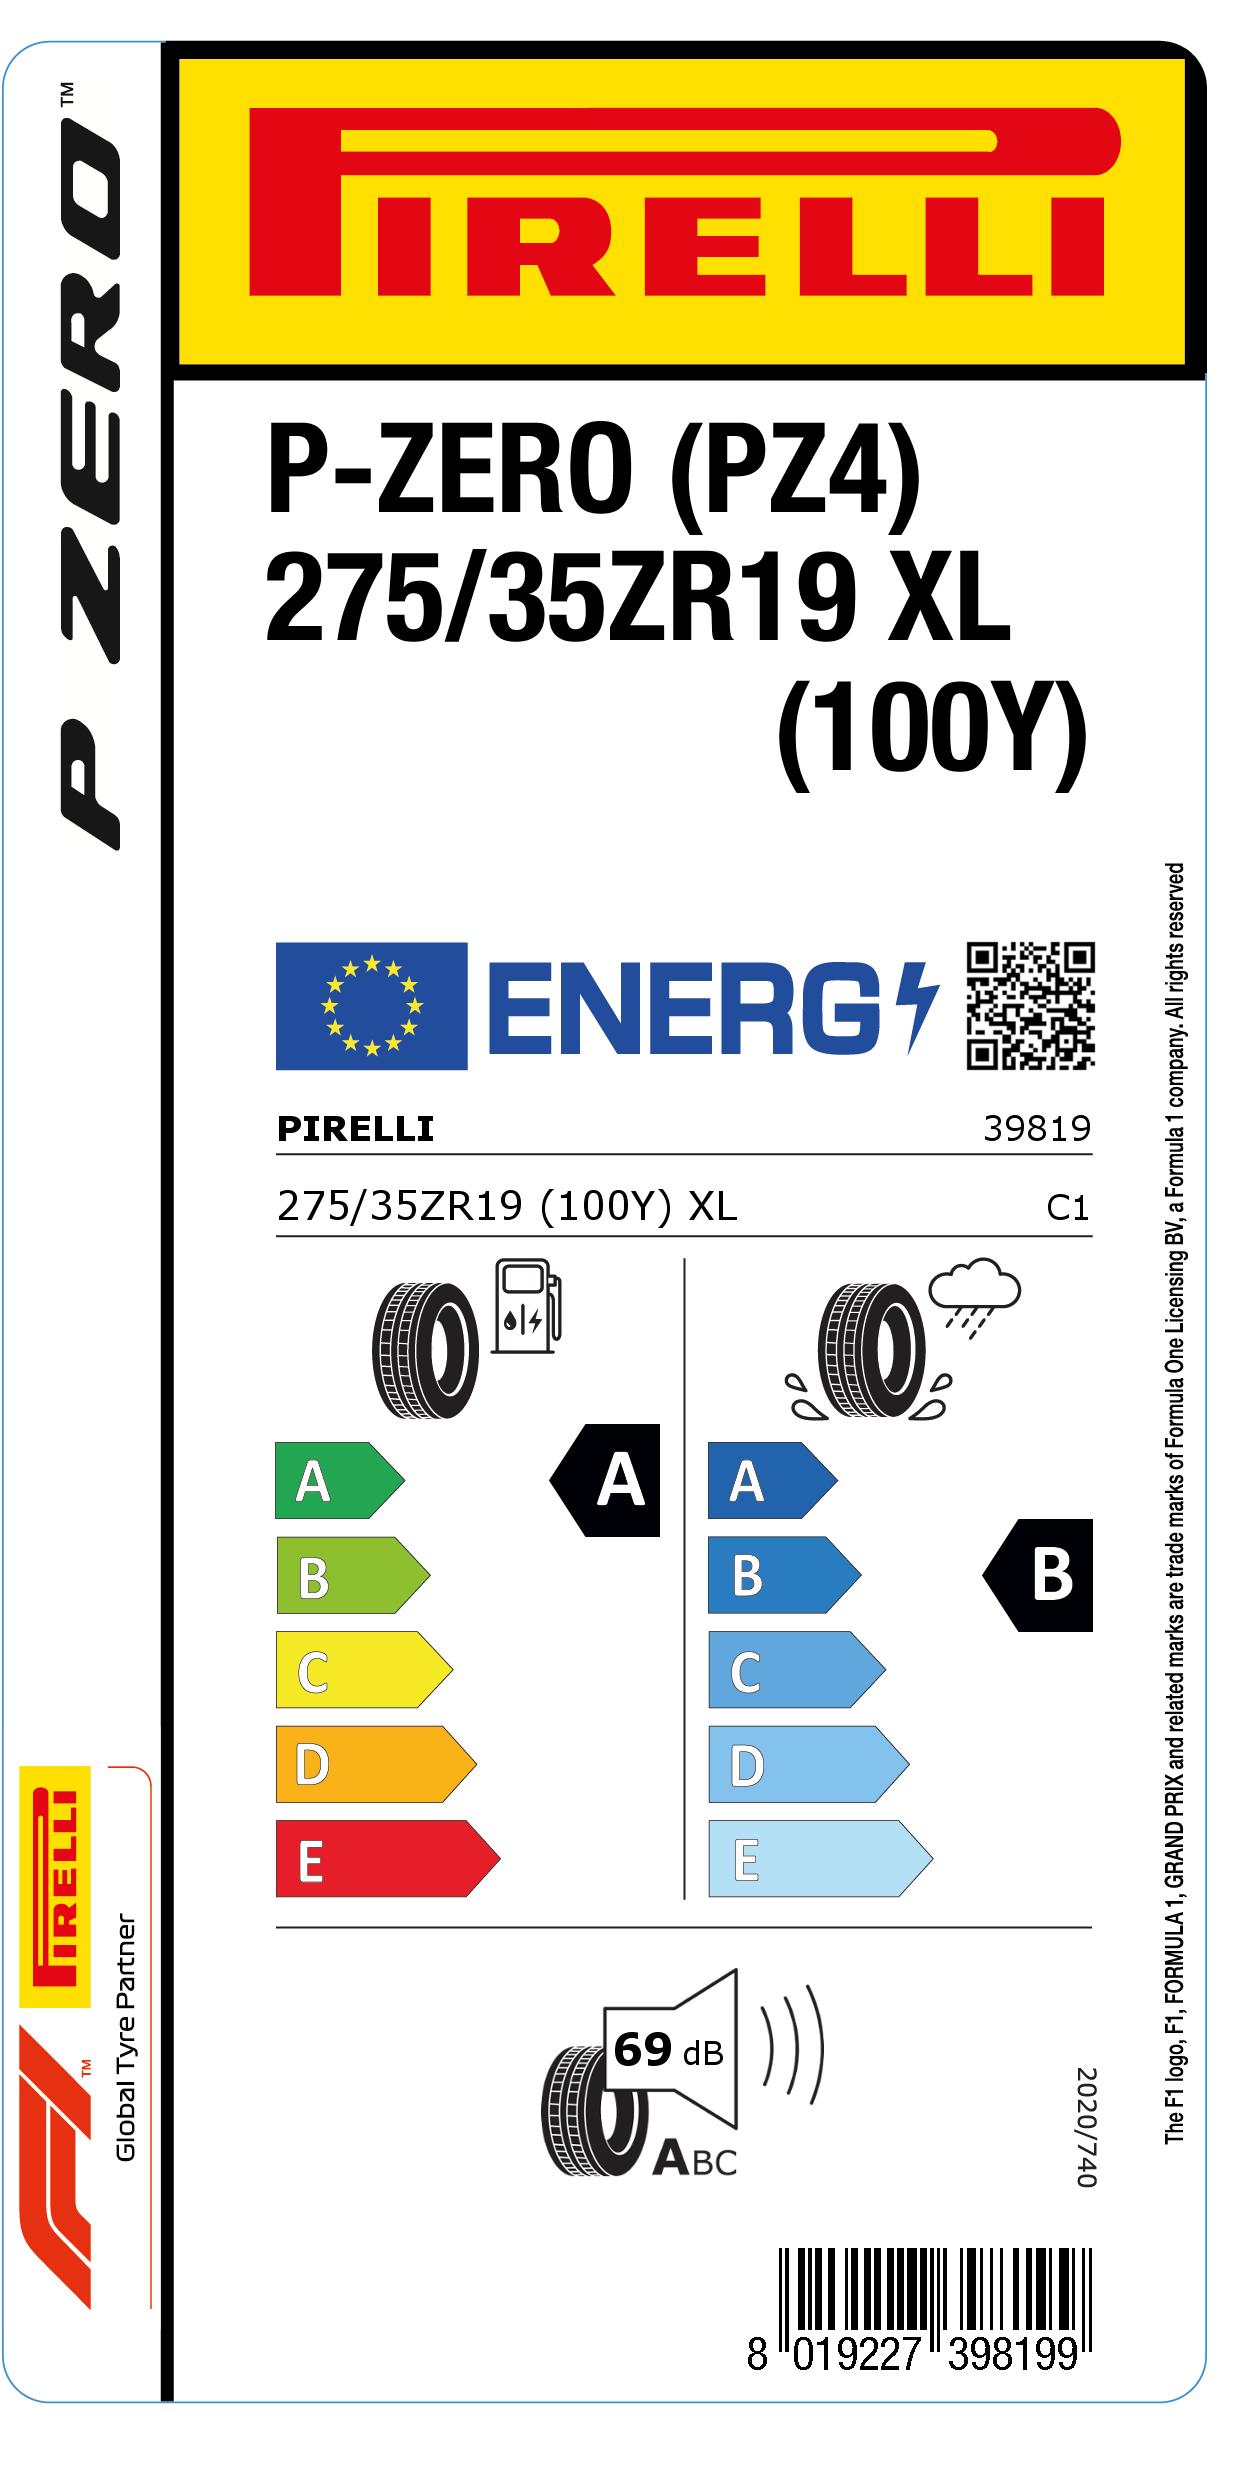 Energimärkning